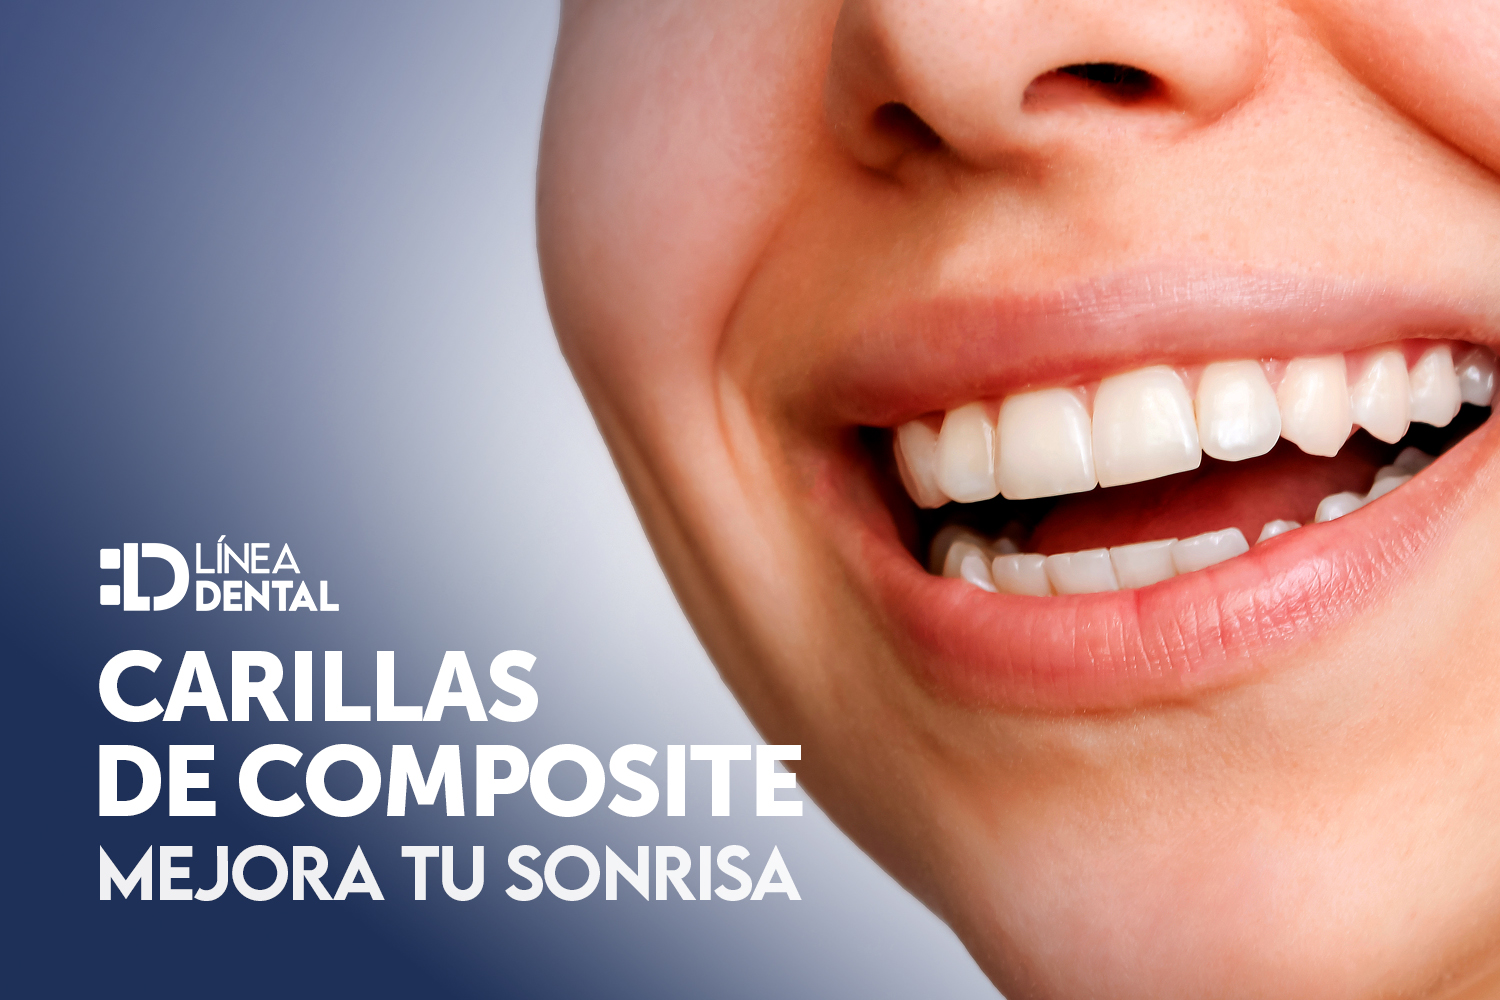 mejora-tu-sonrisa-carillas-composite-linea-dental-ciudad-real-miguelturra